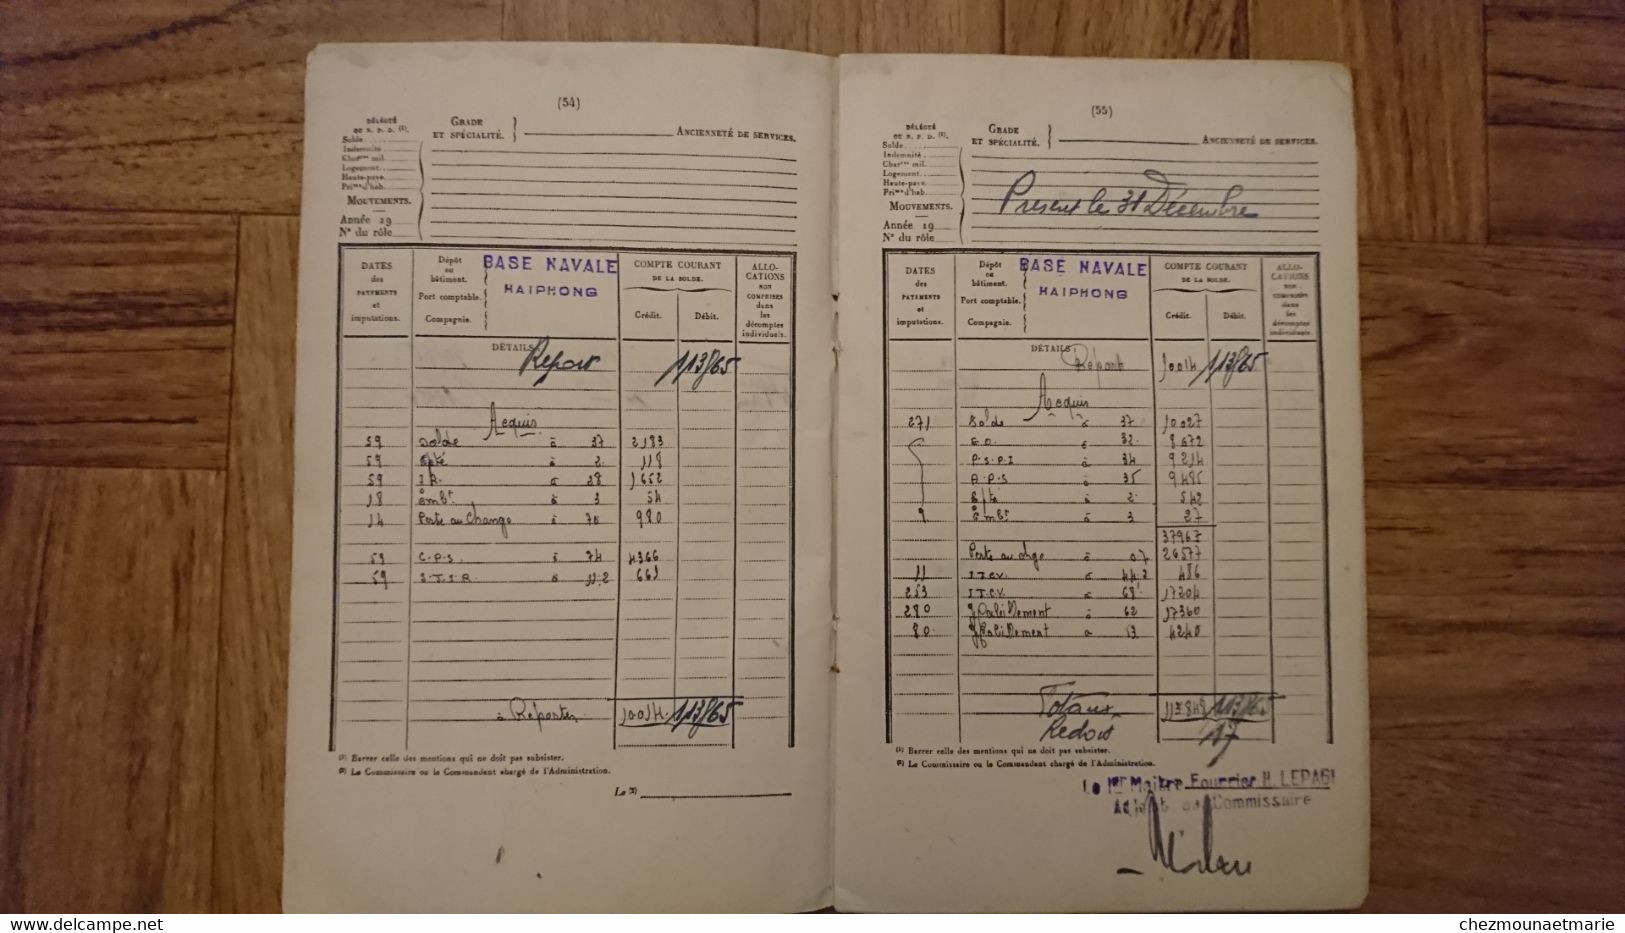 INDOCHINE LIVRET PAIEMENTS D UN QUARTIER MAITRE TIMONIER 1949 1954 BL RICHELIEU SAIGON TONKIN HAIPHONG TOULON CHERBOURG - Documenti